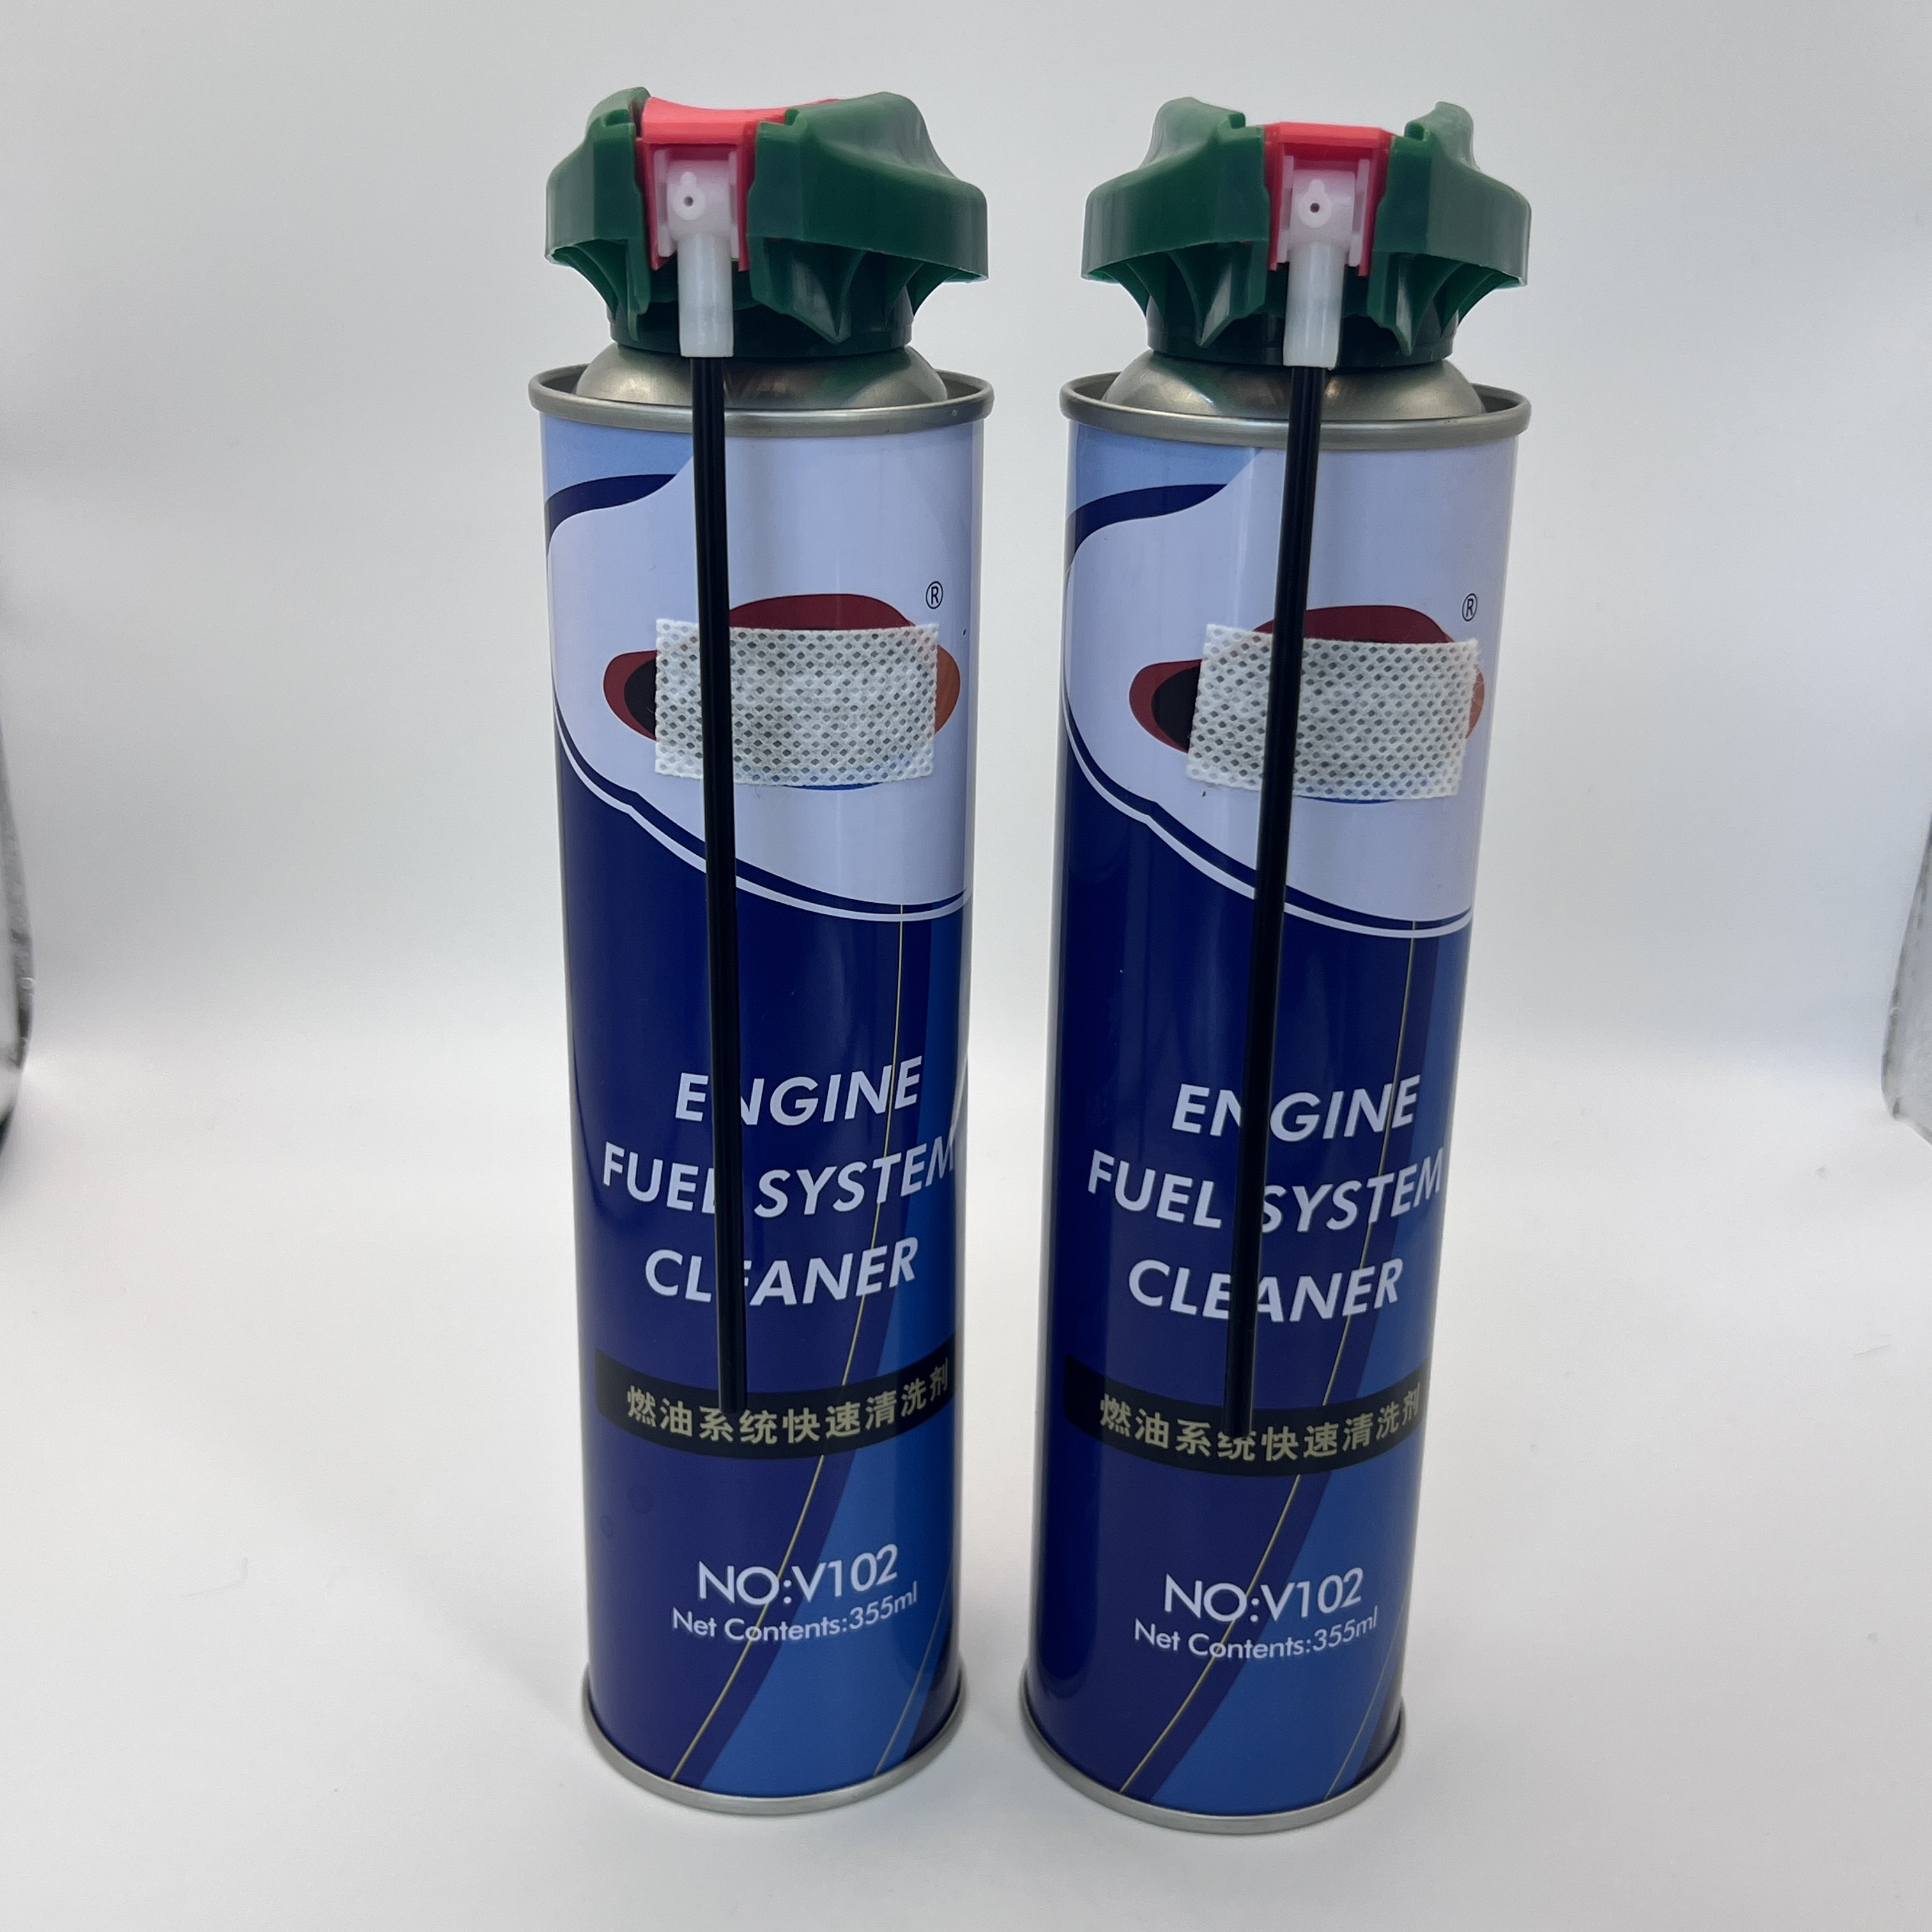 Válvula de aerosol de precisión: solución precisa para tareas de pulverización fina